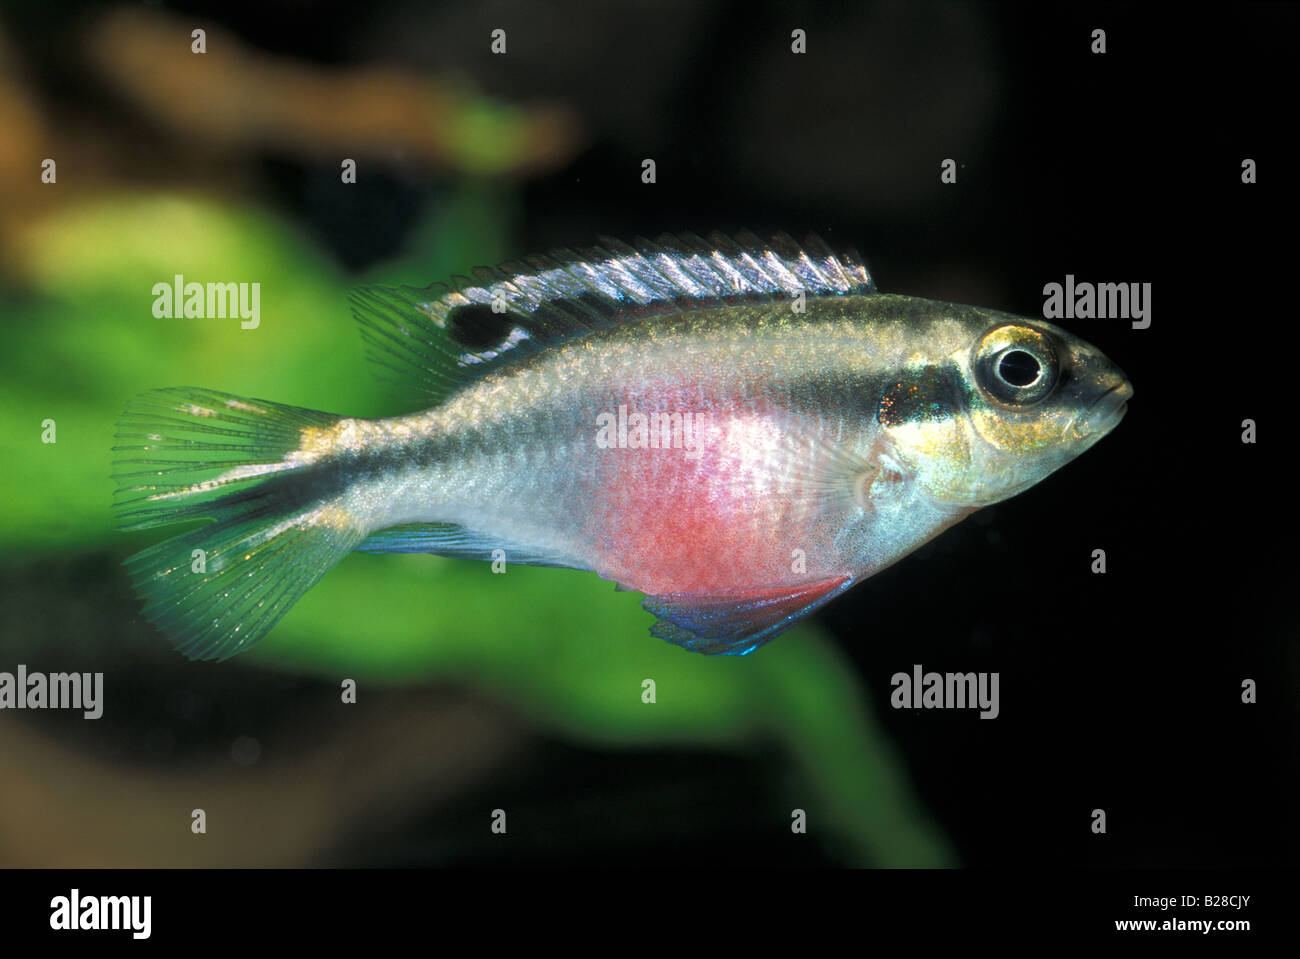 Pelvicachromis pulcher, female, Dward Cichild, Africa Stock Photo